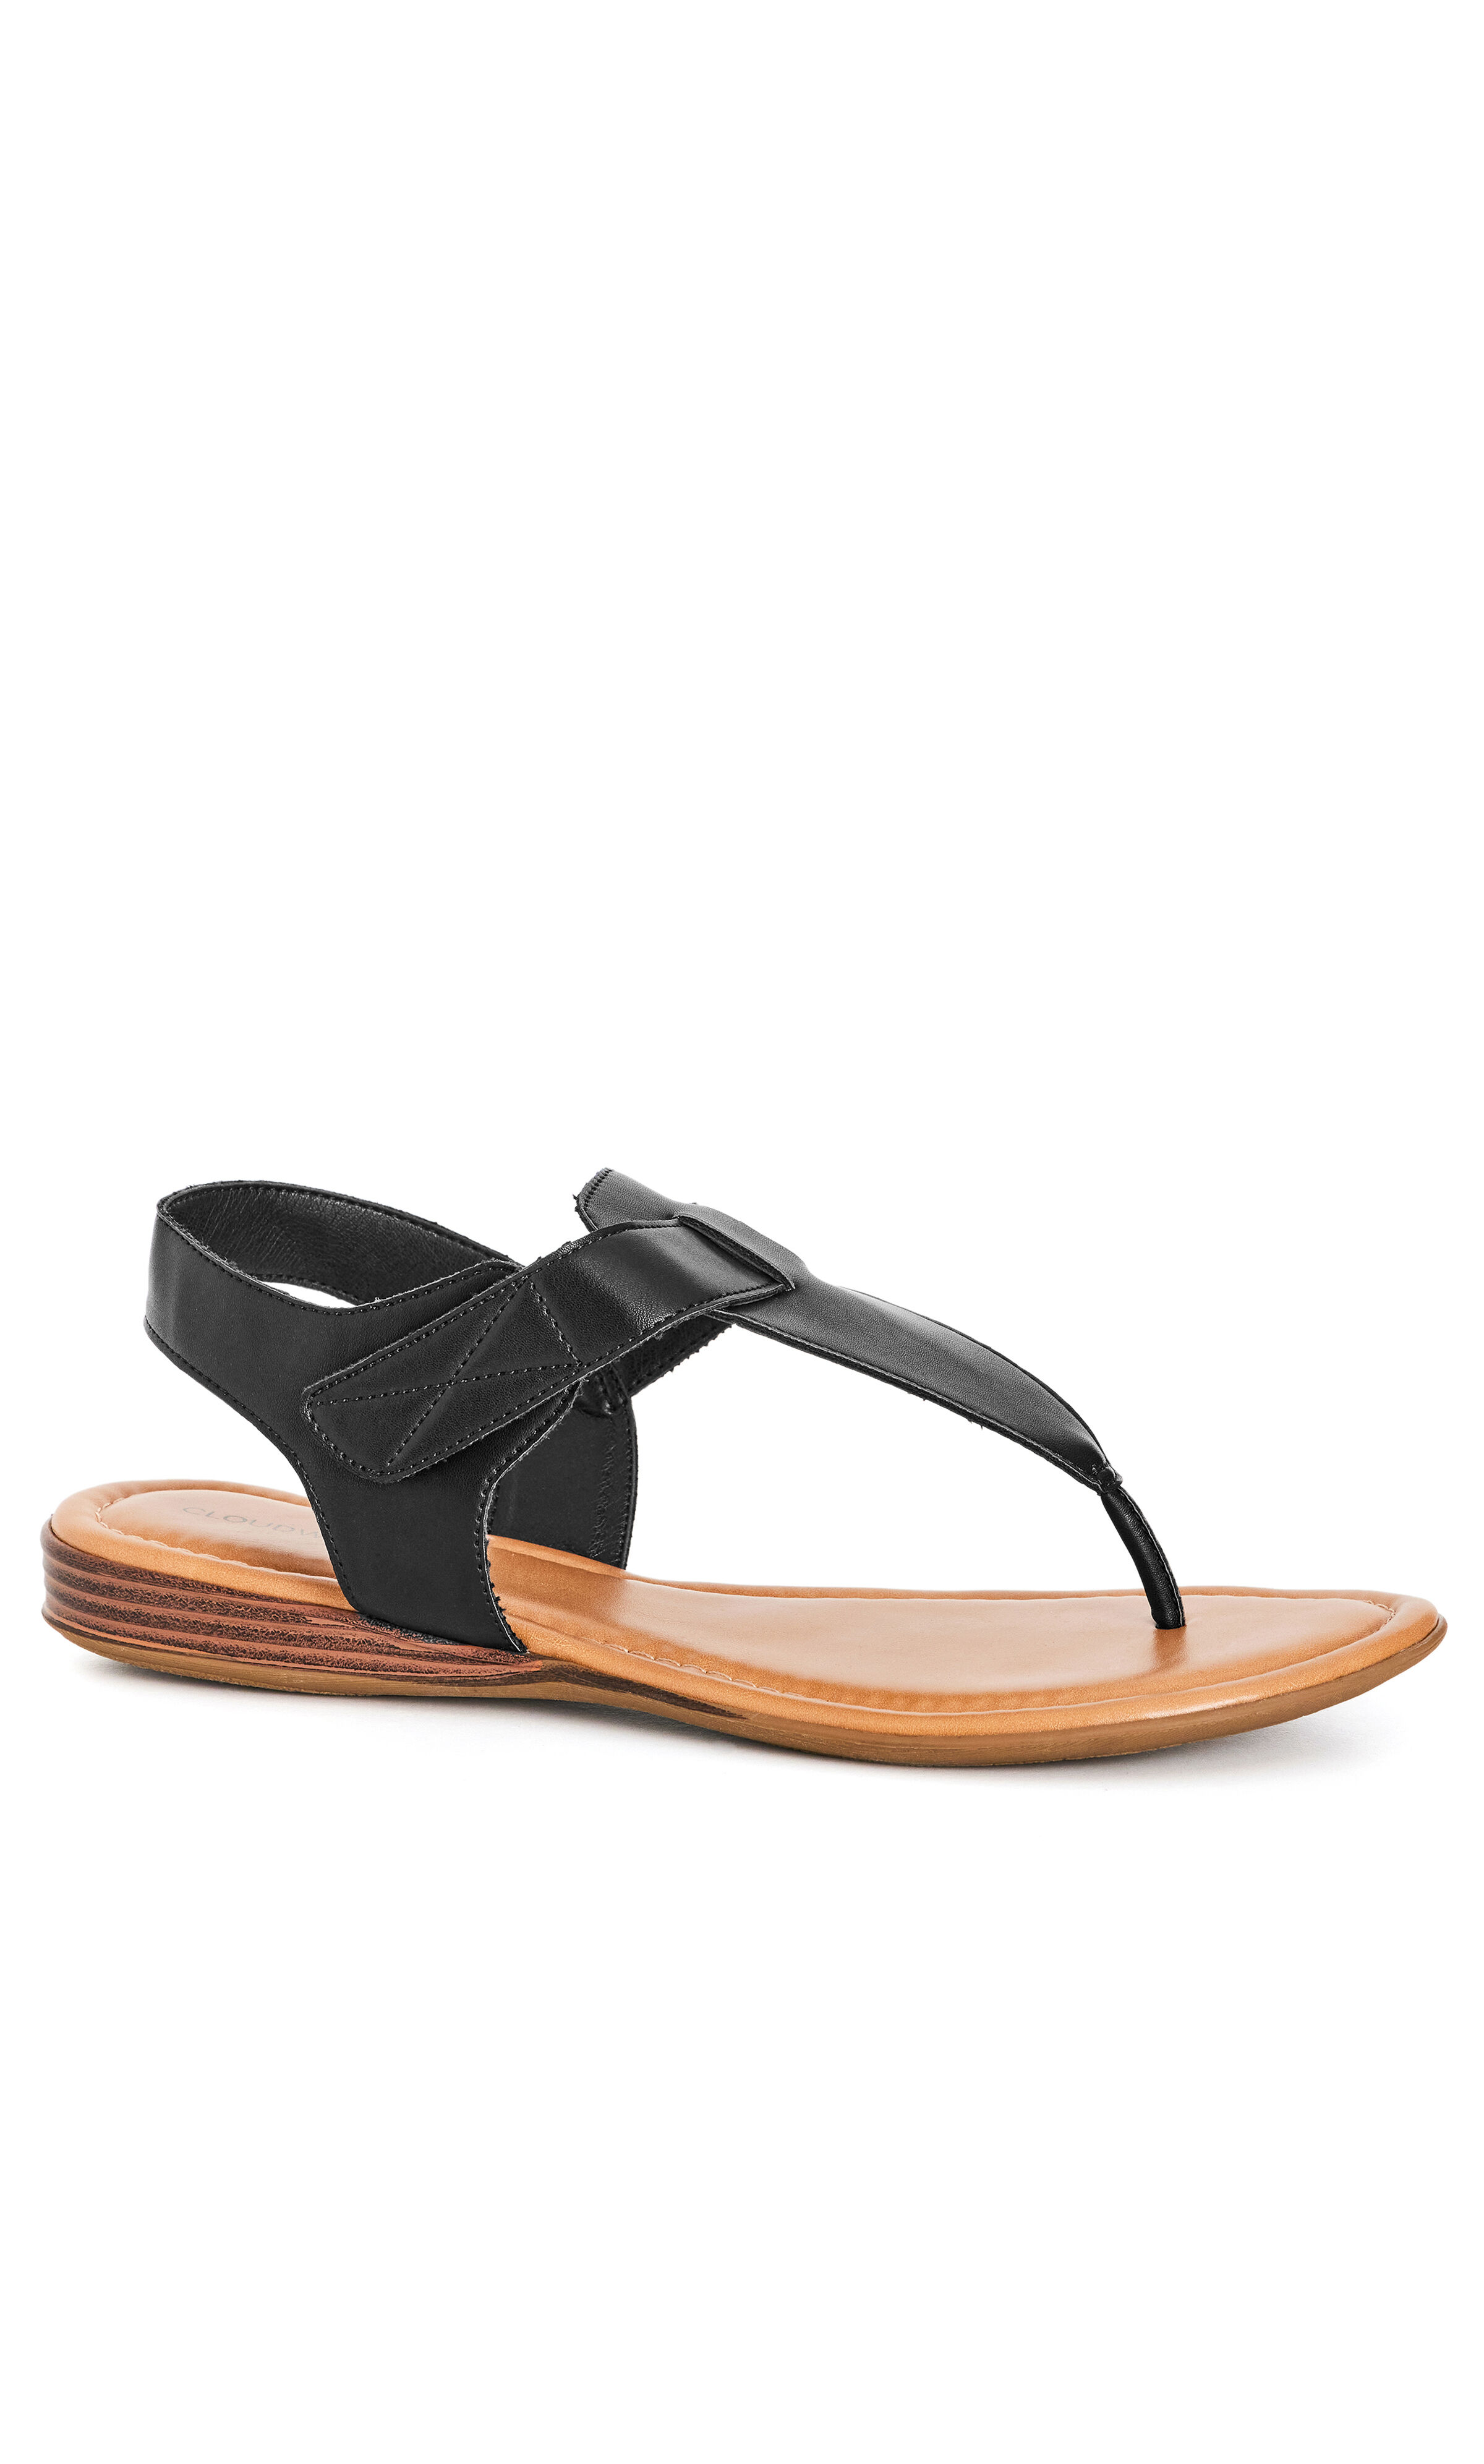 Harper - Black Leather Sandals